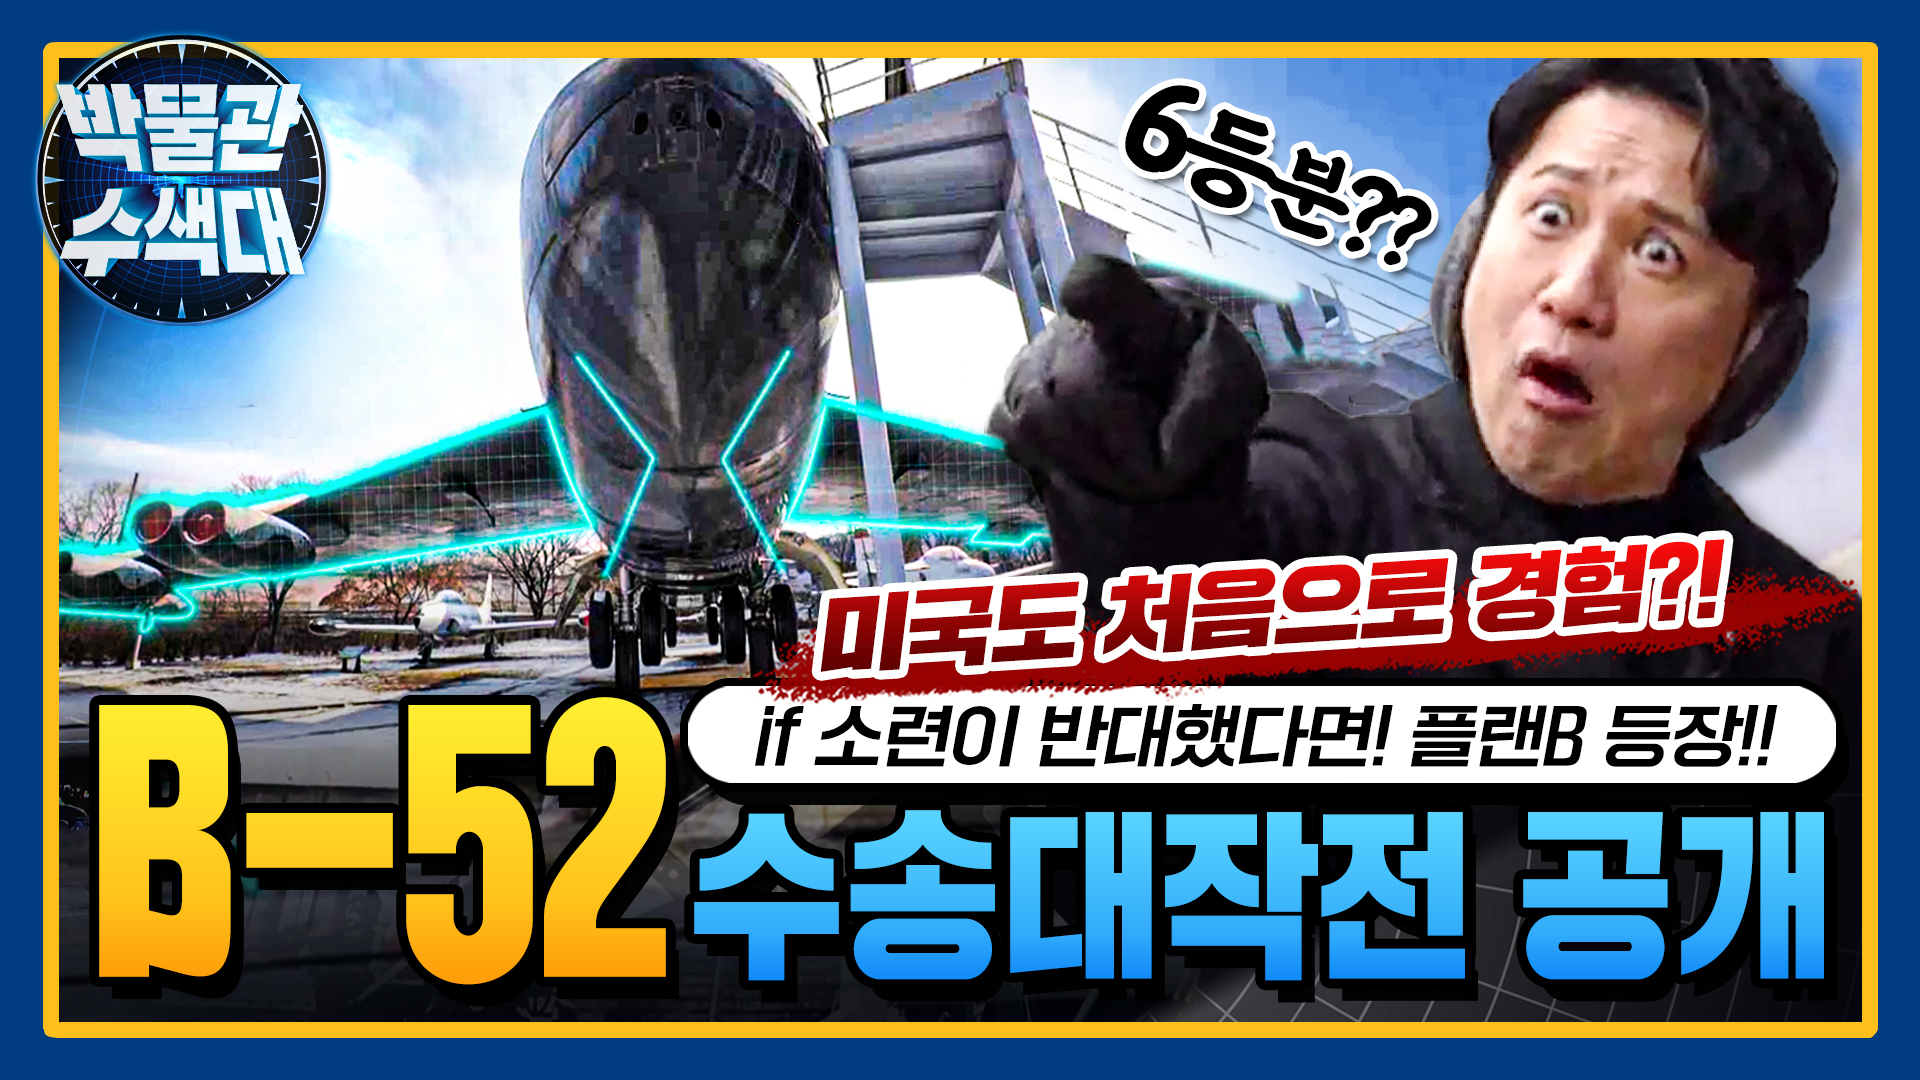 한국 군사기지에서 퇴역할 뻔한 B-52?!! 수송대작전에 얽힌 비하인드 대공개!